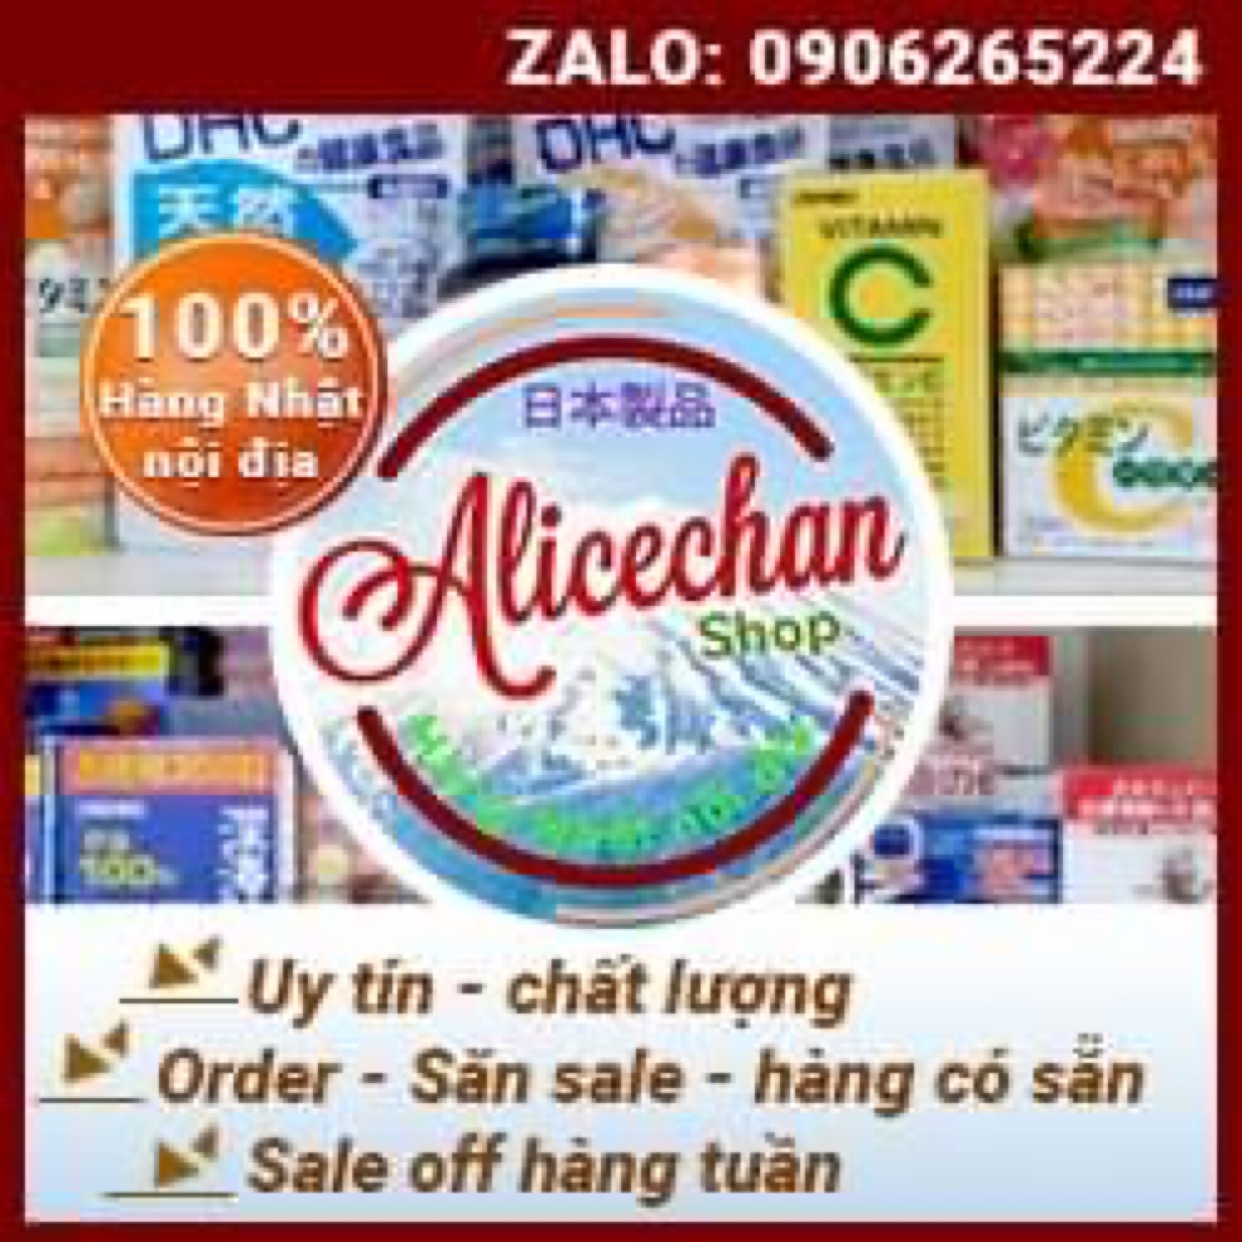 Alice Chan Shop